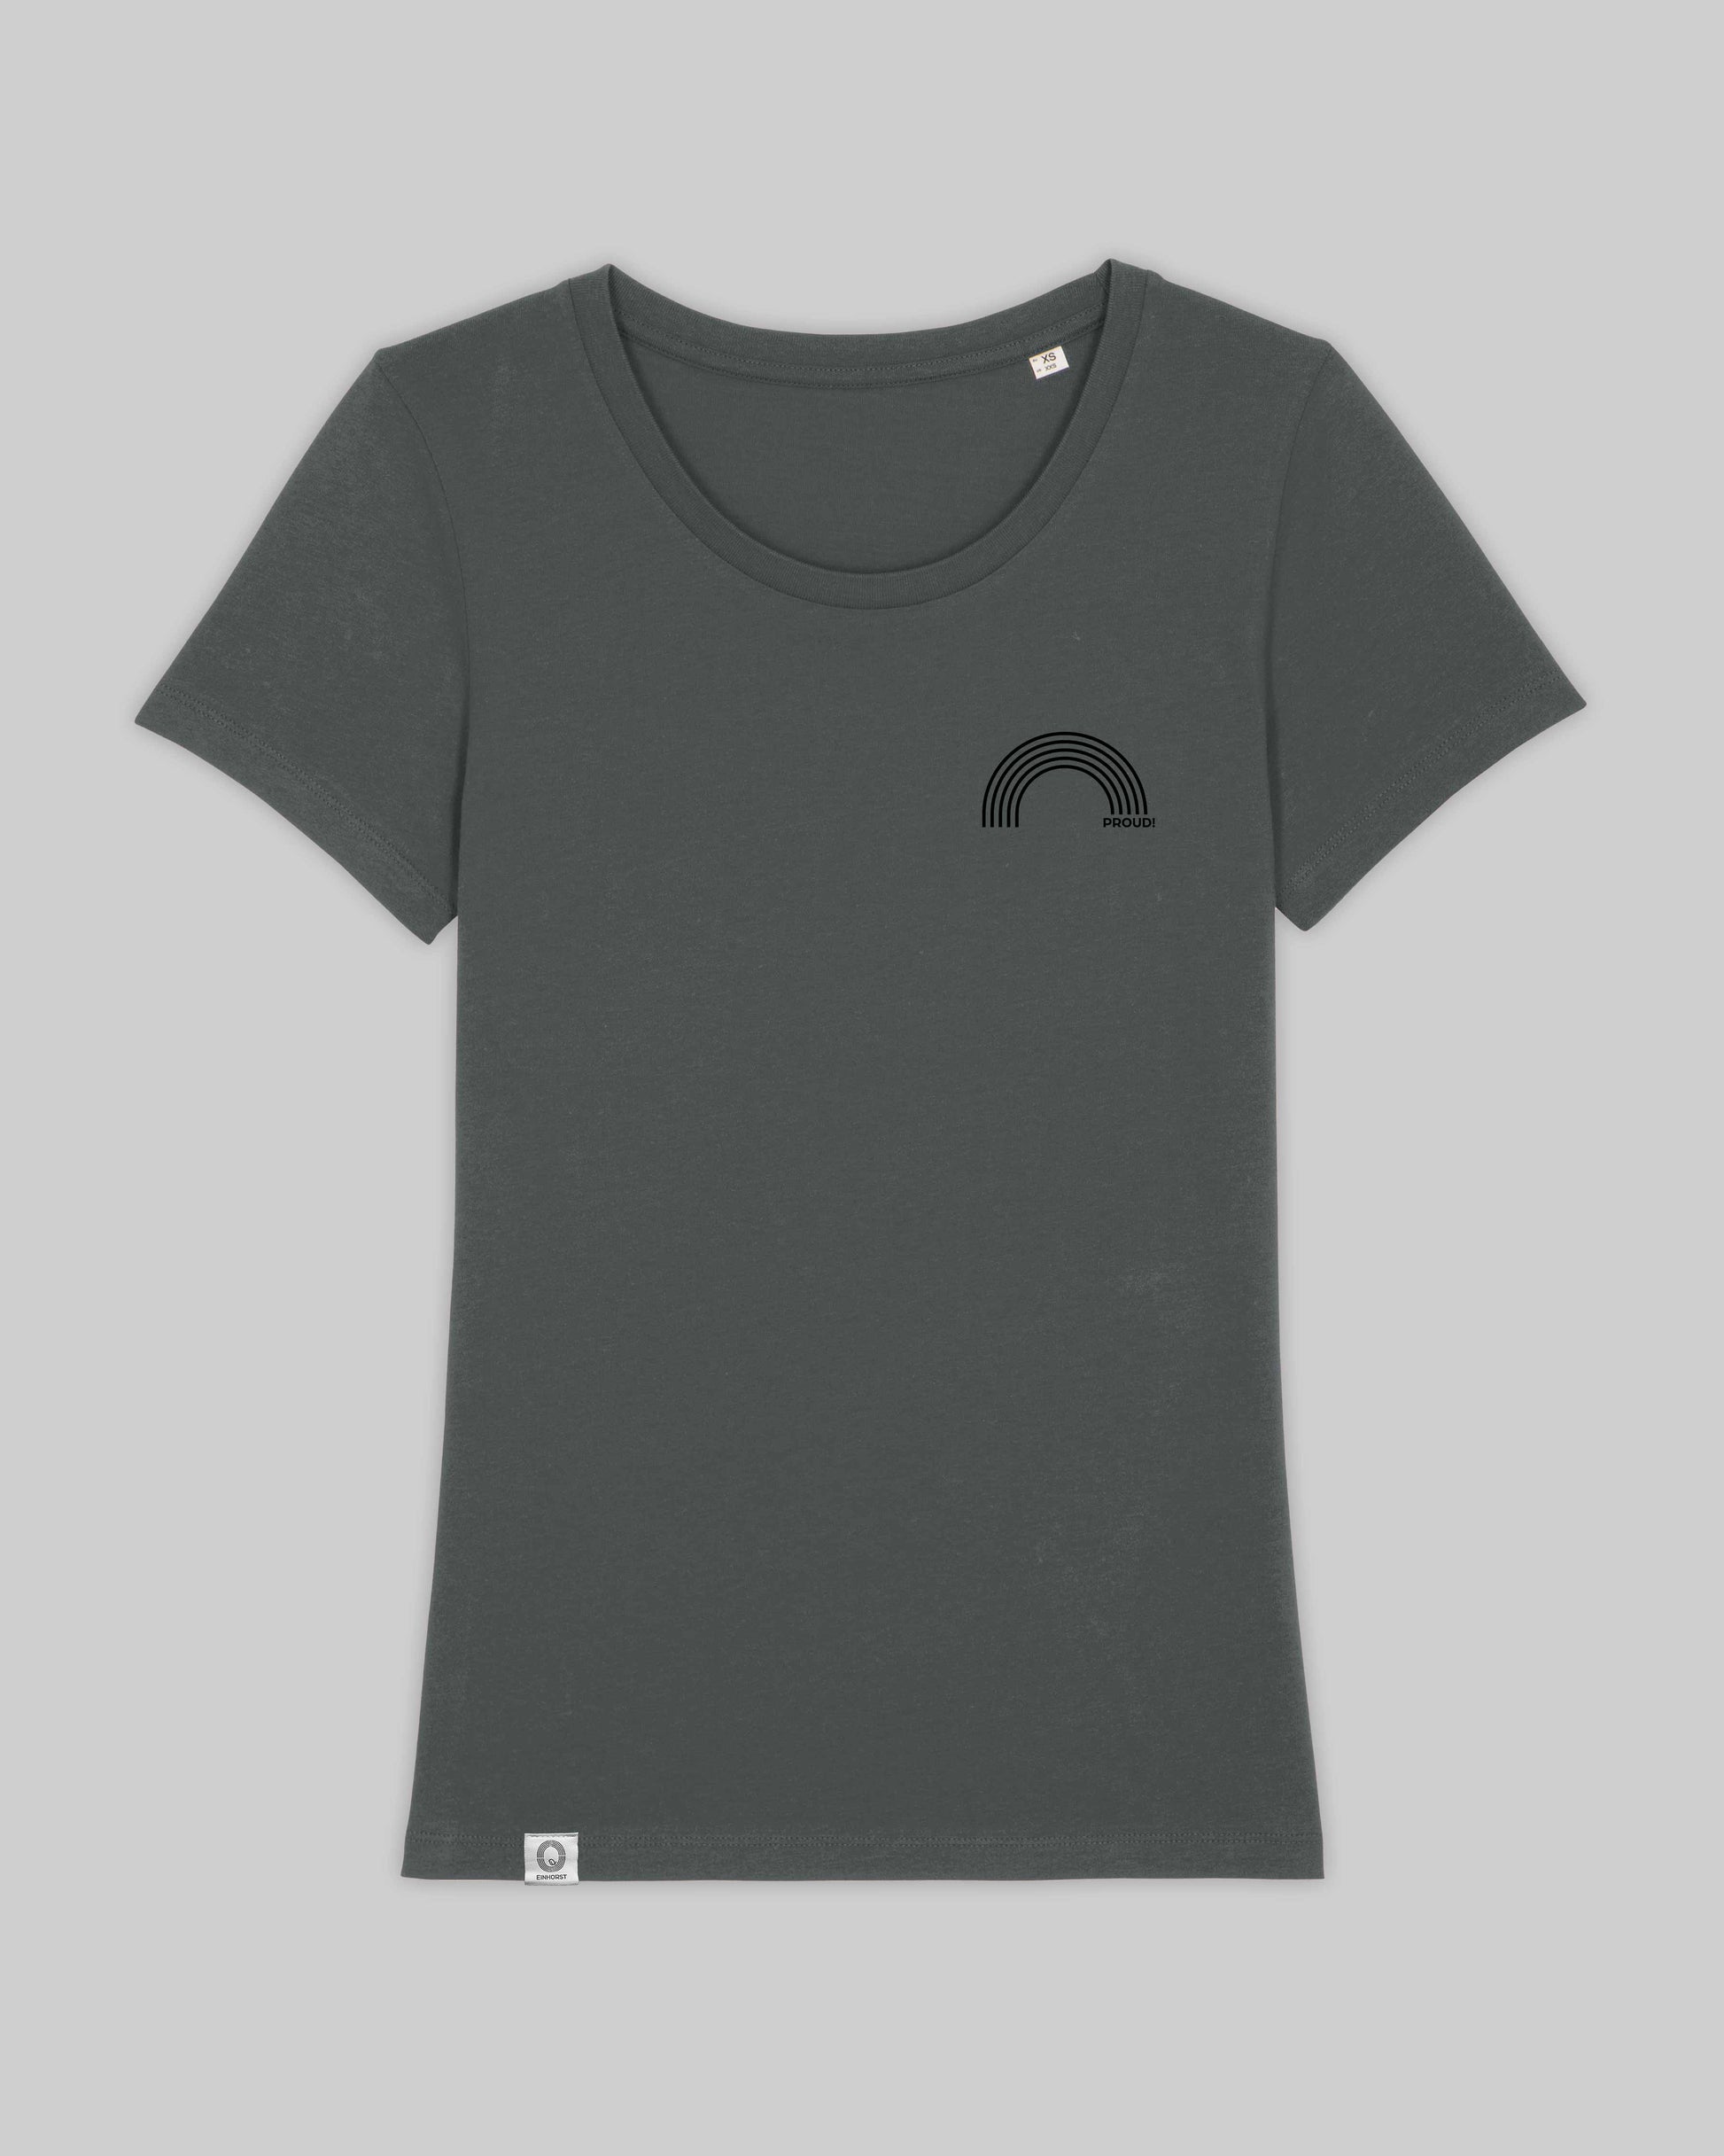 EINHORST® Organic Shirt tailliert in "Anthracite" mit dem Motiv "proud Regenbogen" in der Kombination schwarzer Regenbogen mit schwarzer Schrift, Bild von Shirt von vorne